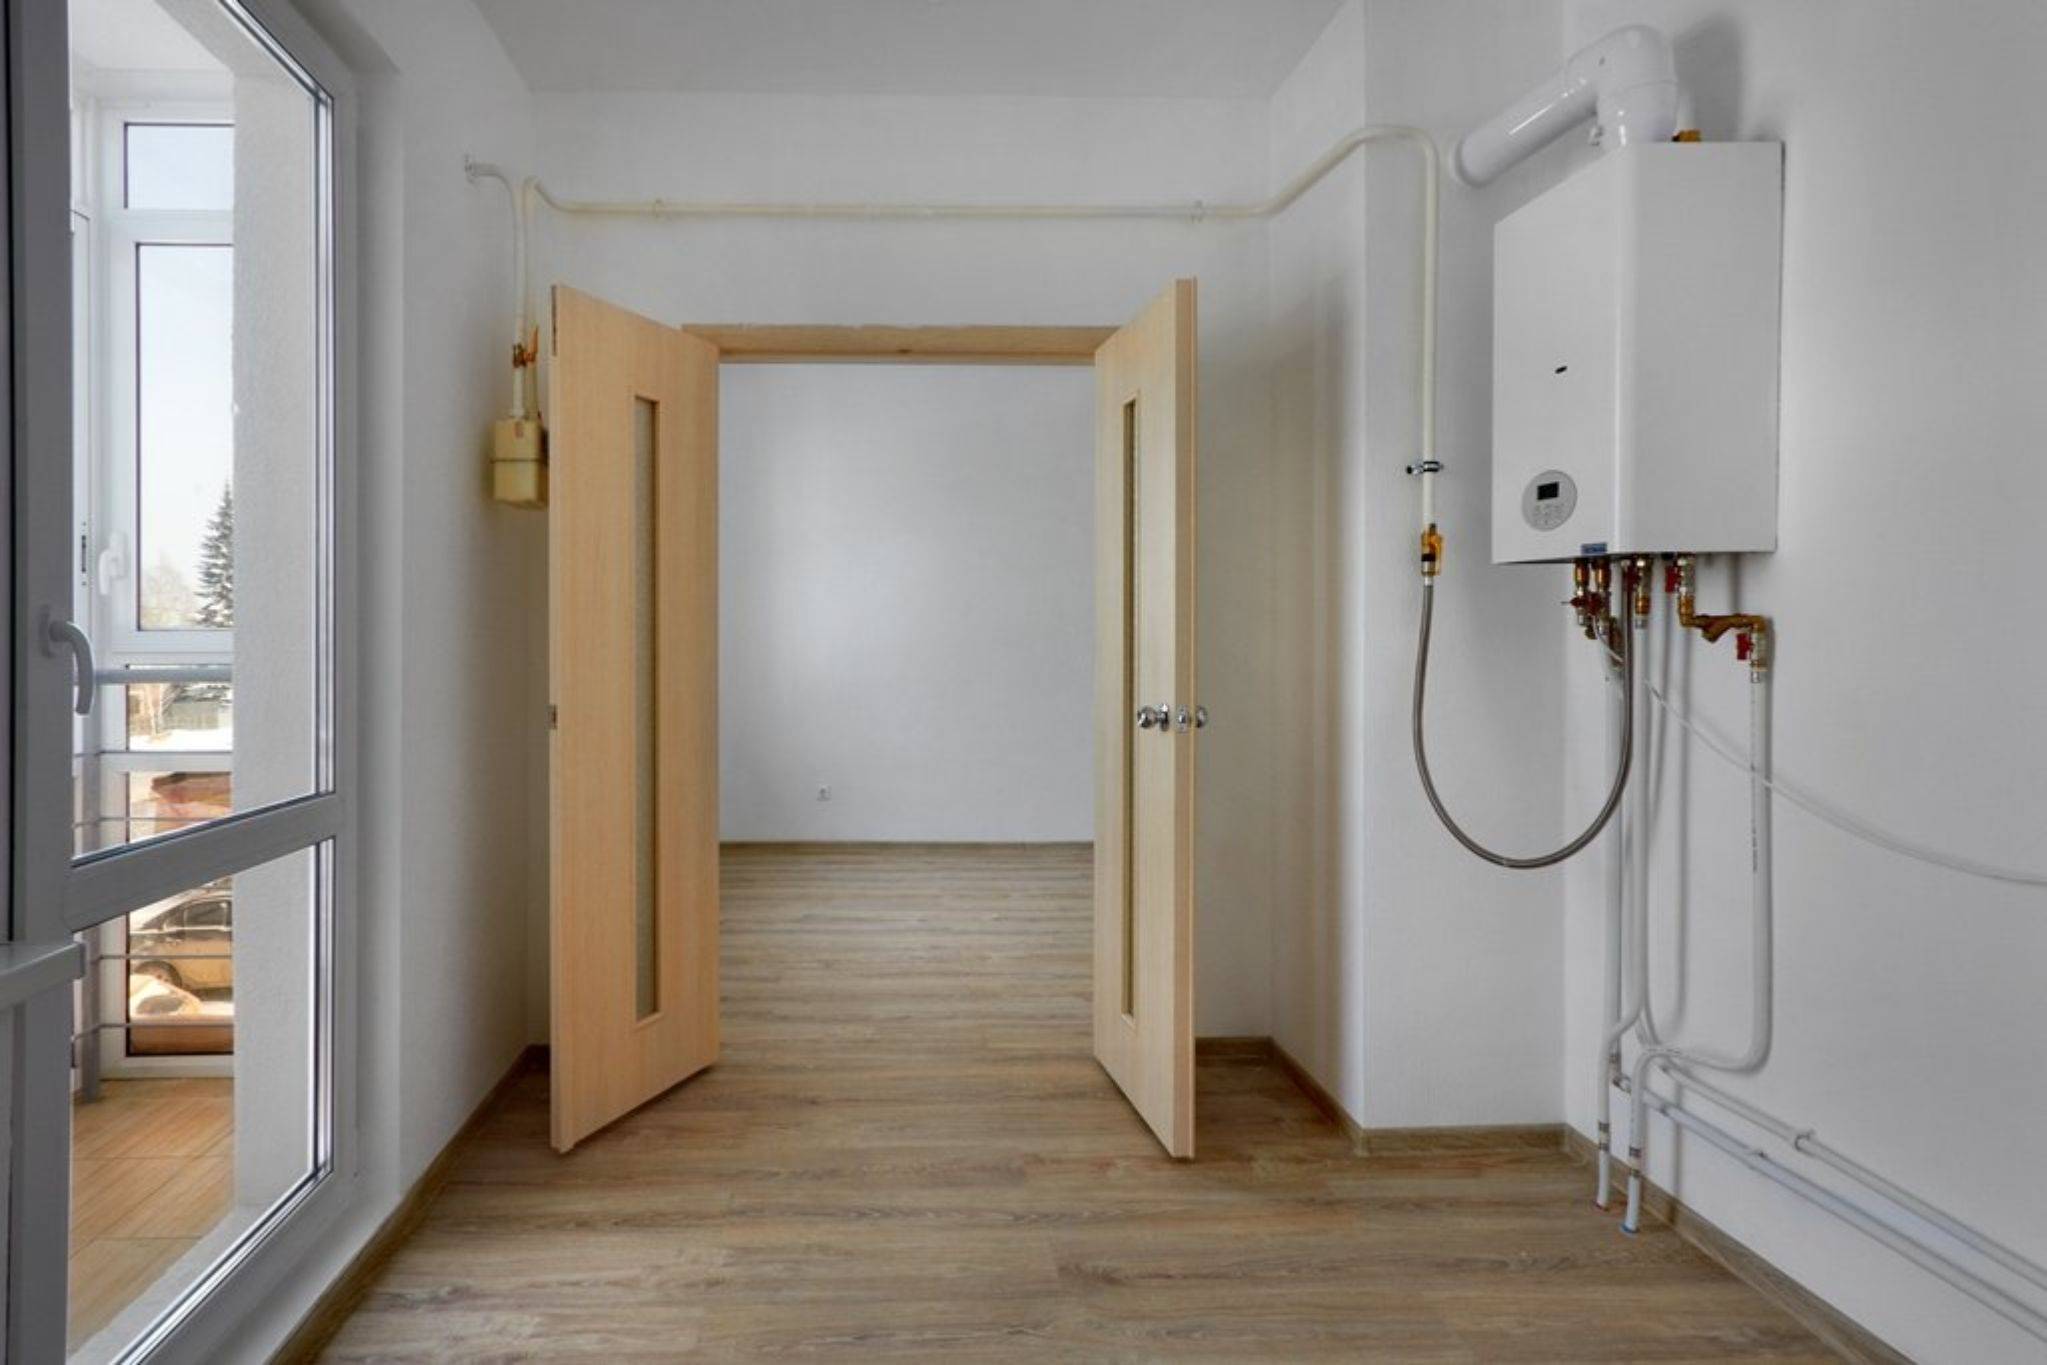 Комфортные условия жизни — залог счастья. как создать идеальную систему отопления в квартире?